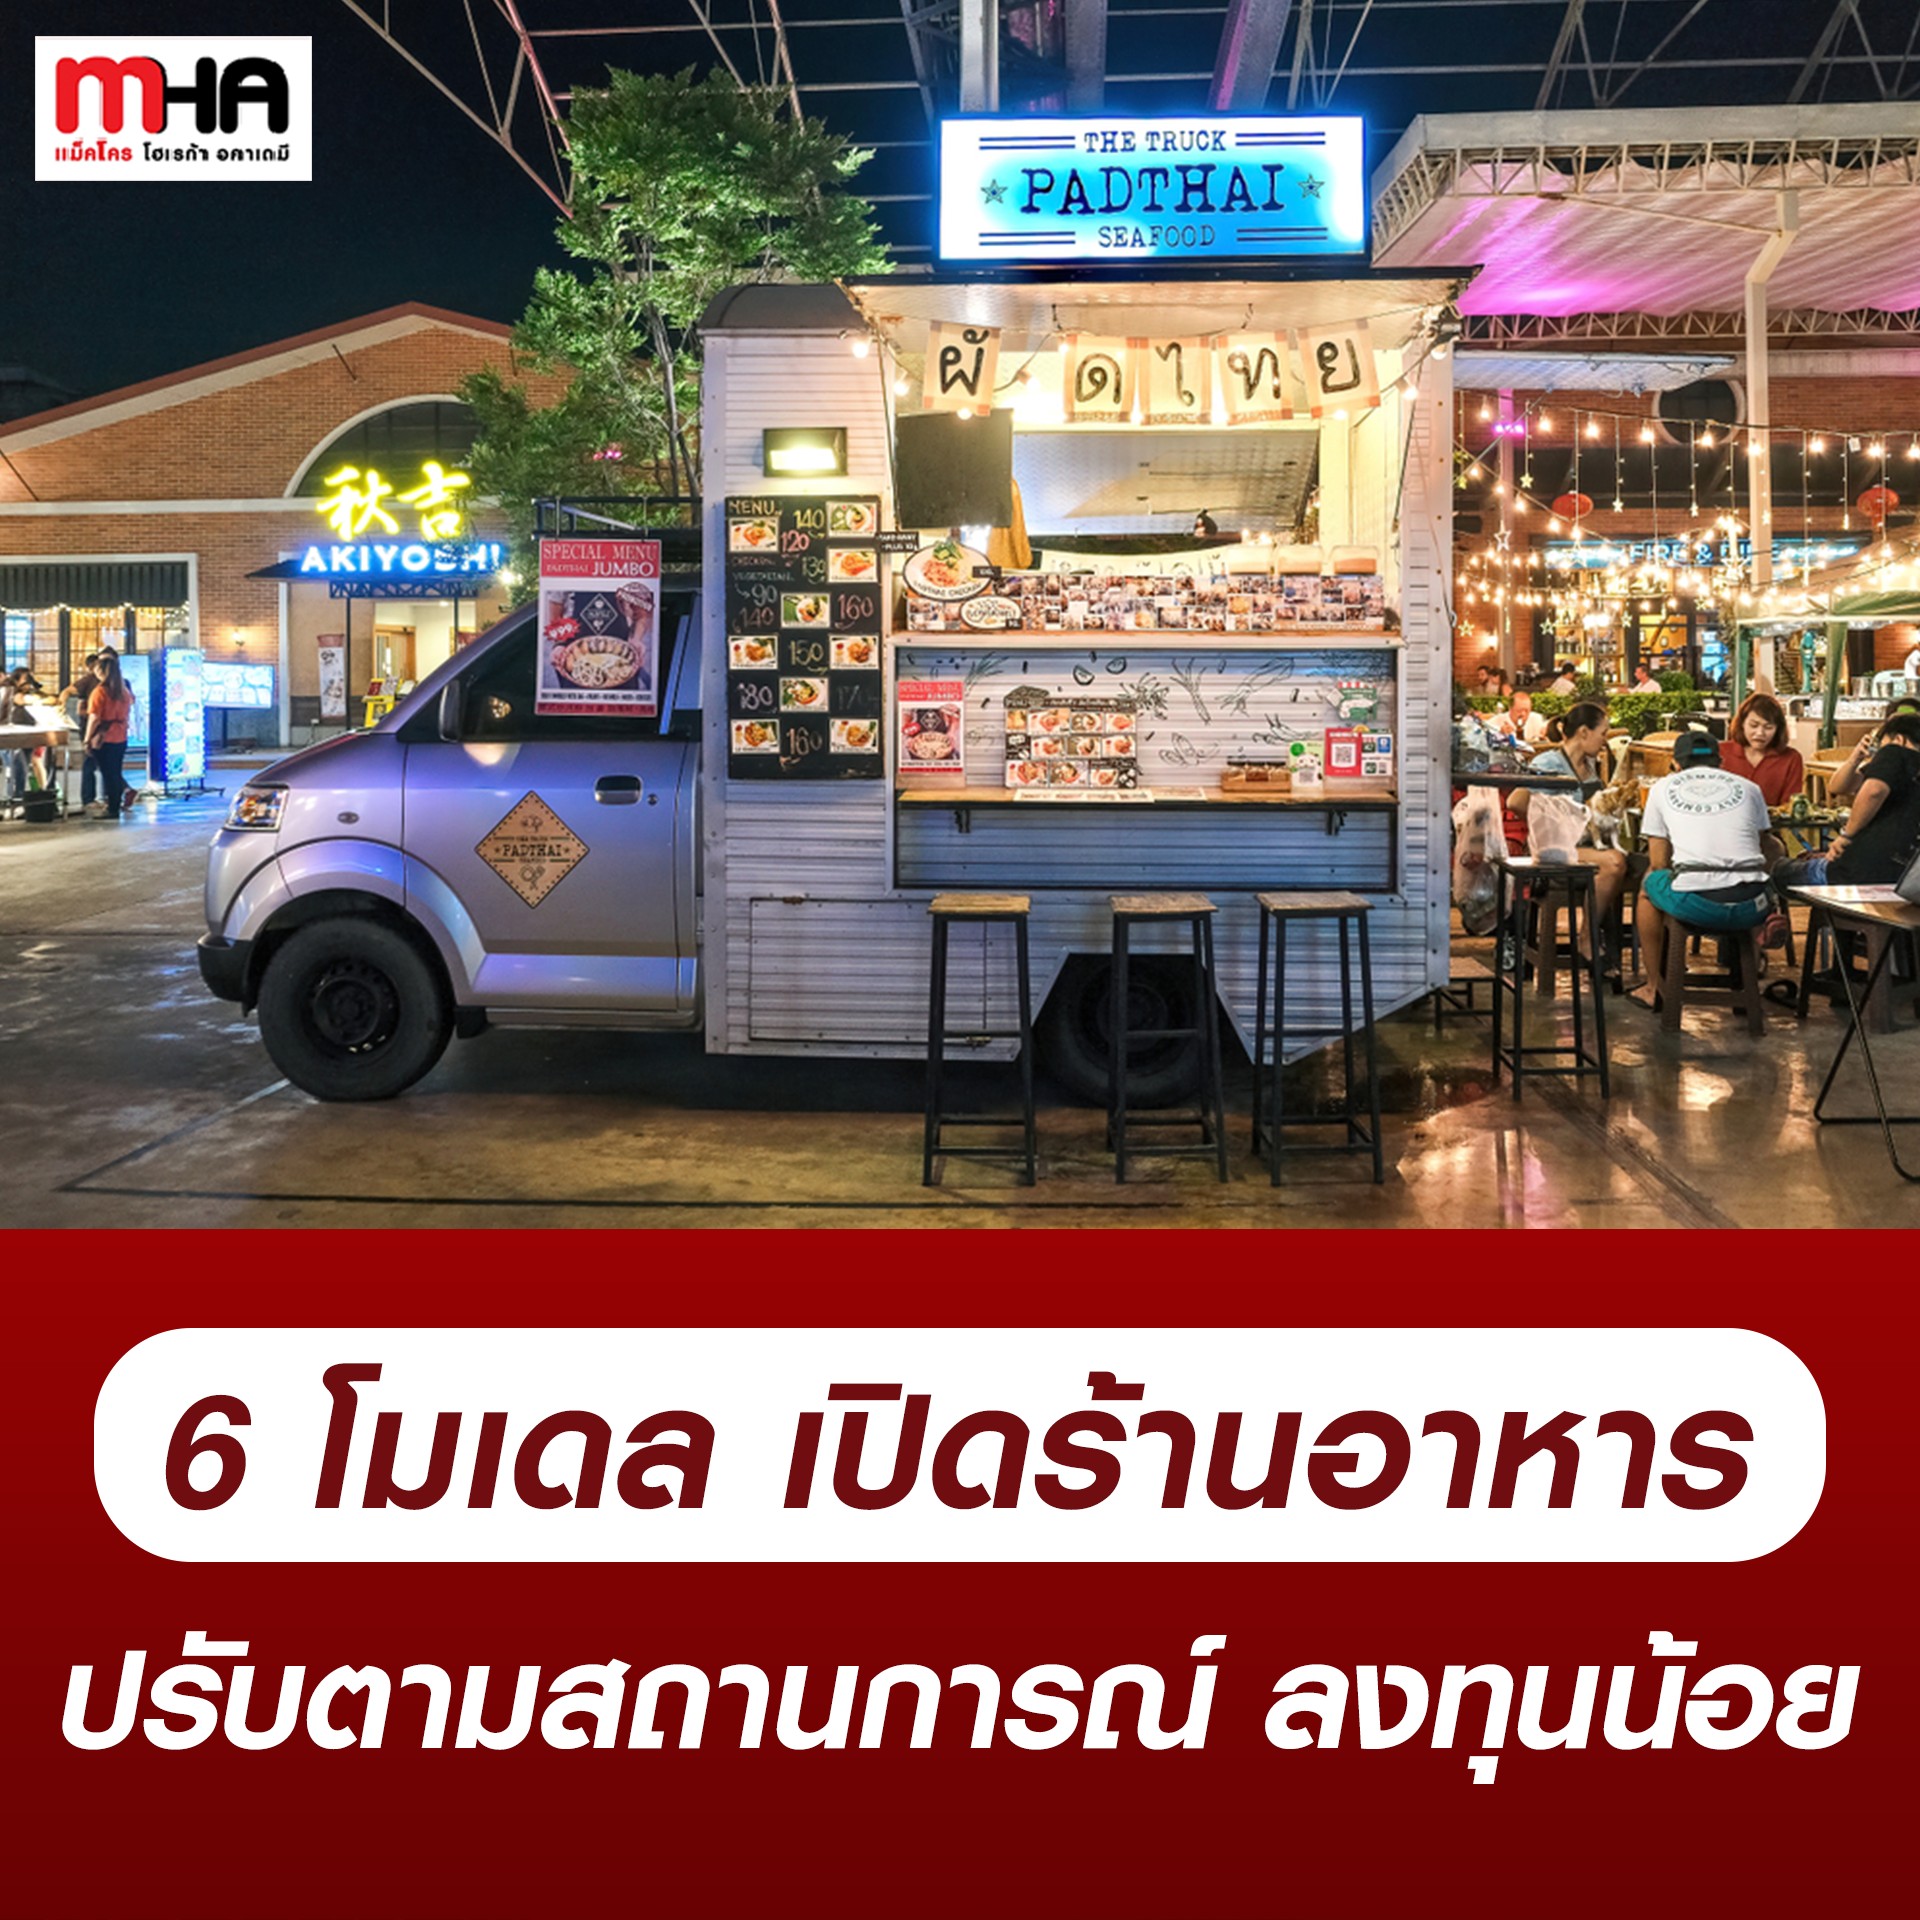 6 โมเดลเปิดร้านอาหาร ปรับตามสถานการณ์ ลงทุนน้อย - บทความ - Mha